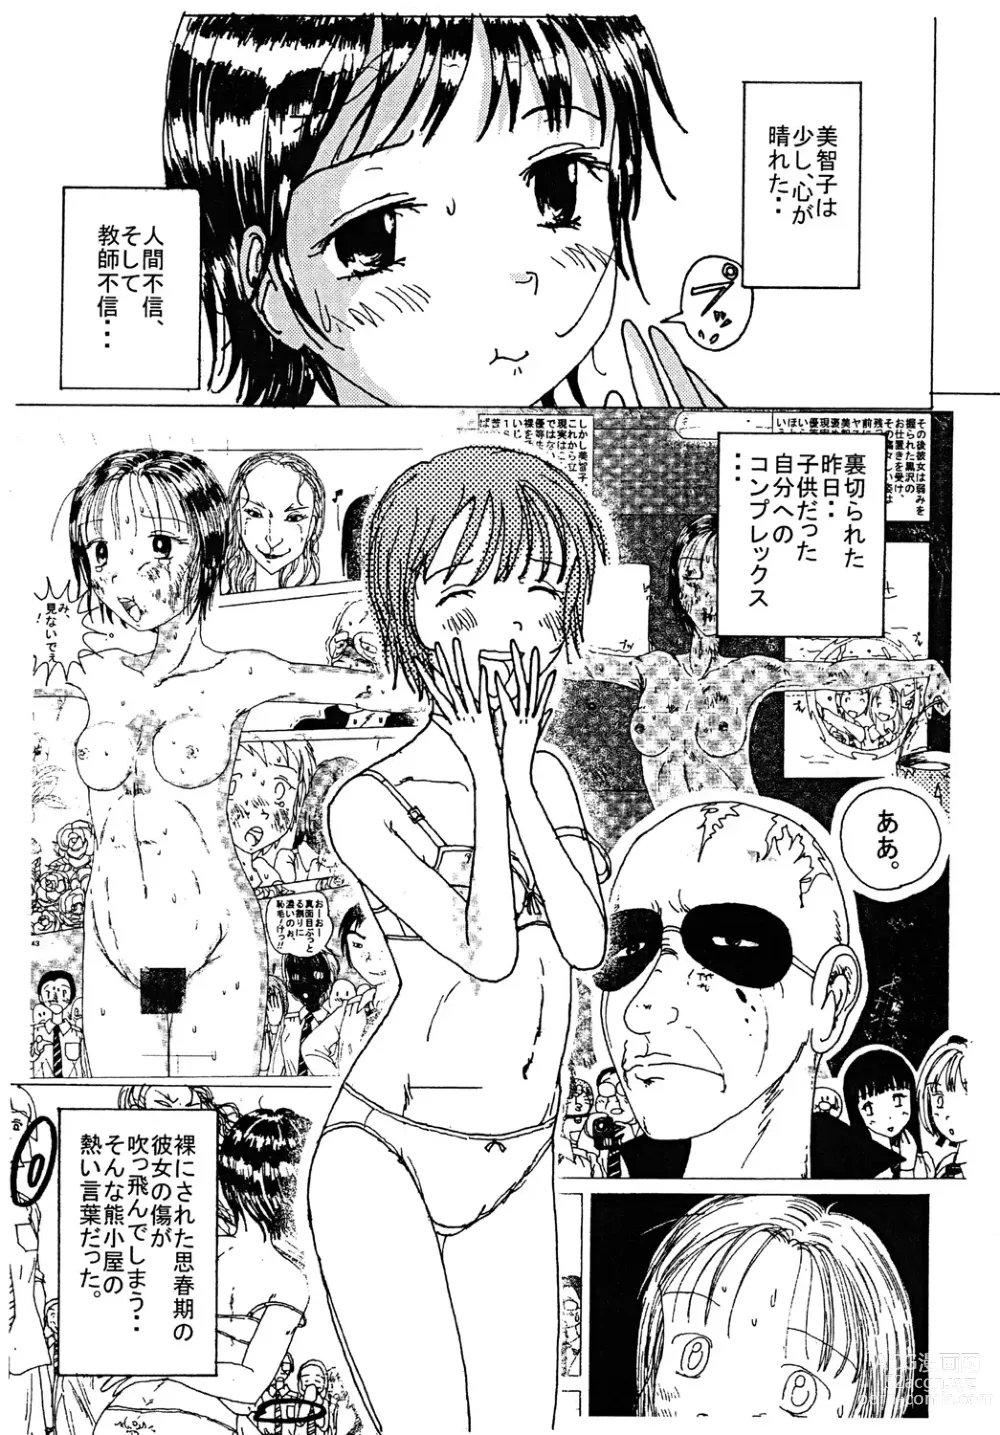 Page 12 of doujinshi Mune Ippai no Dizzy